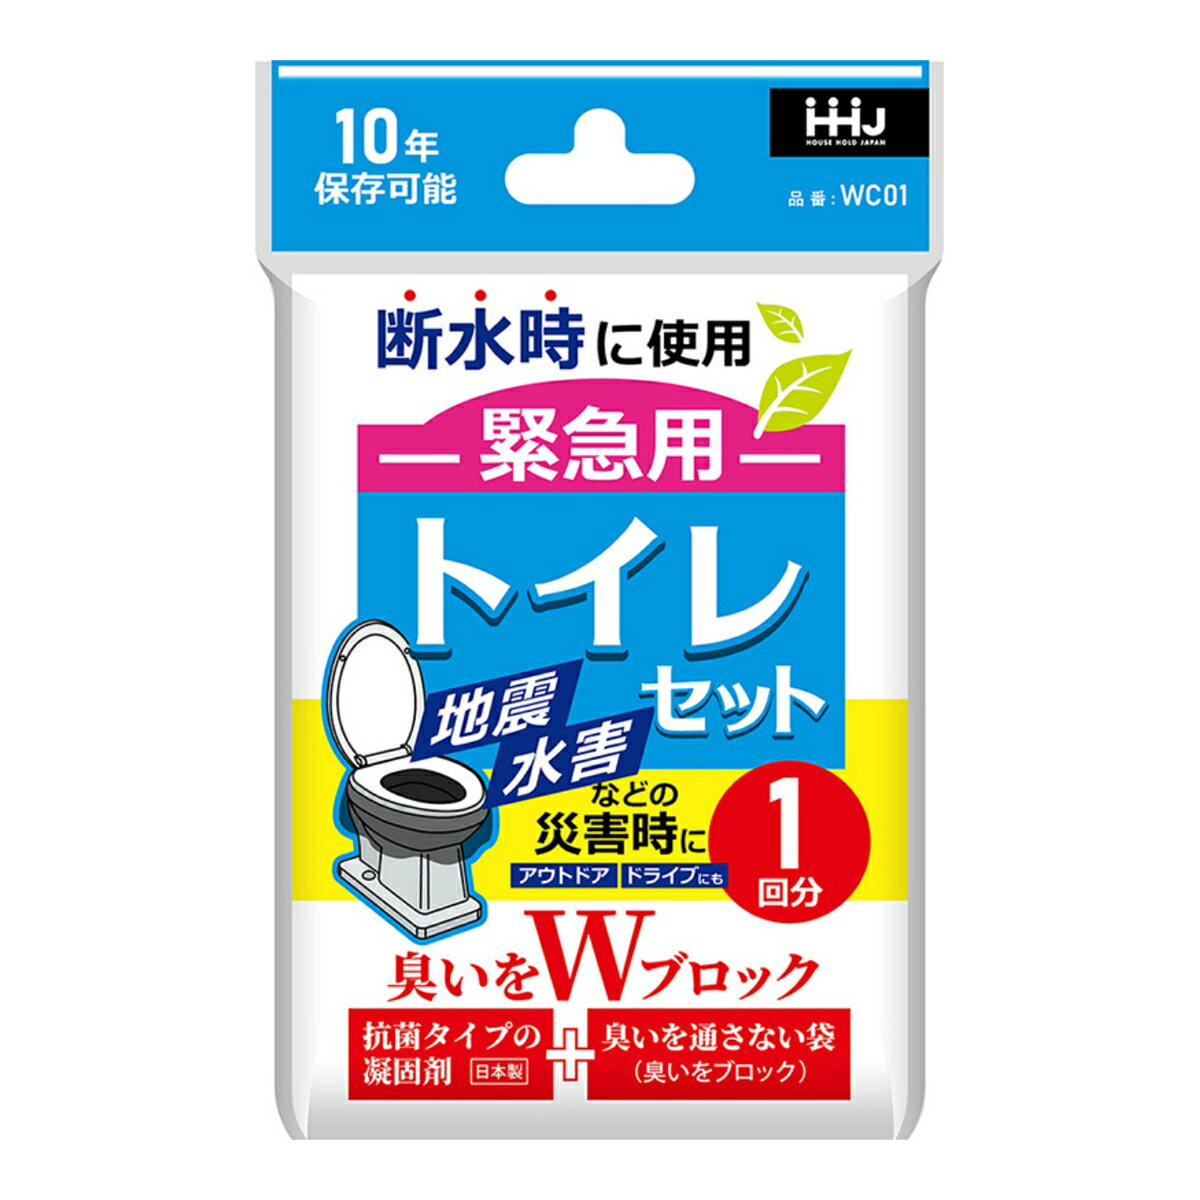 【配送おまかせ】ハウスホールドジャパン WC01 臭いをWブロック 緊急用 トイレセット 1回分 1個